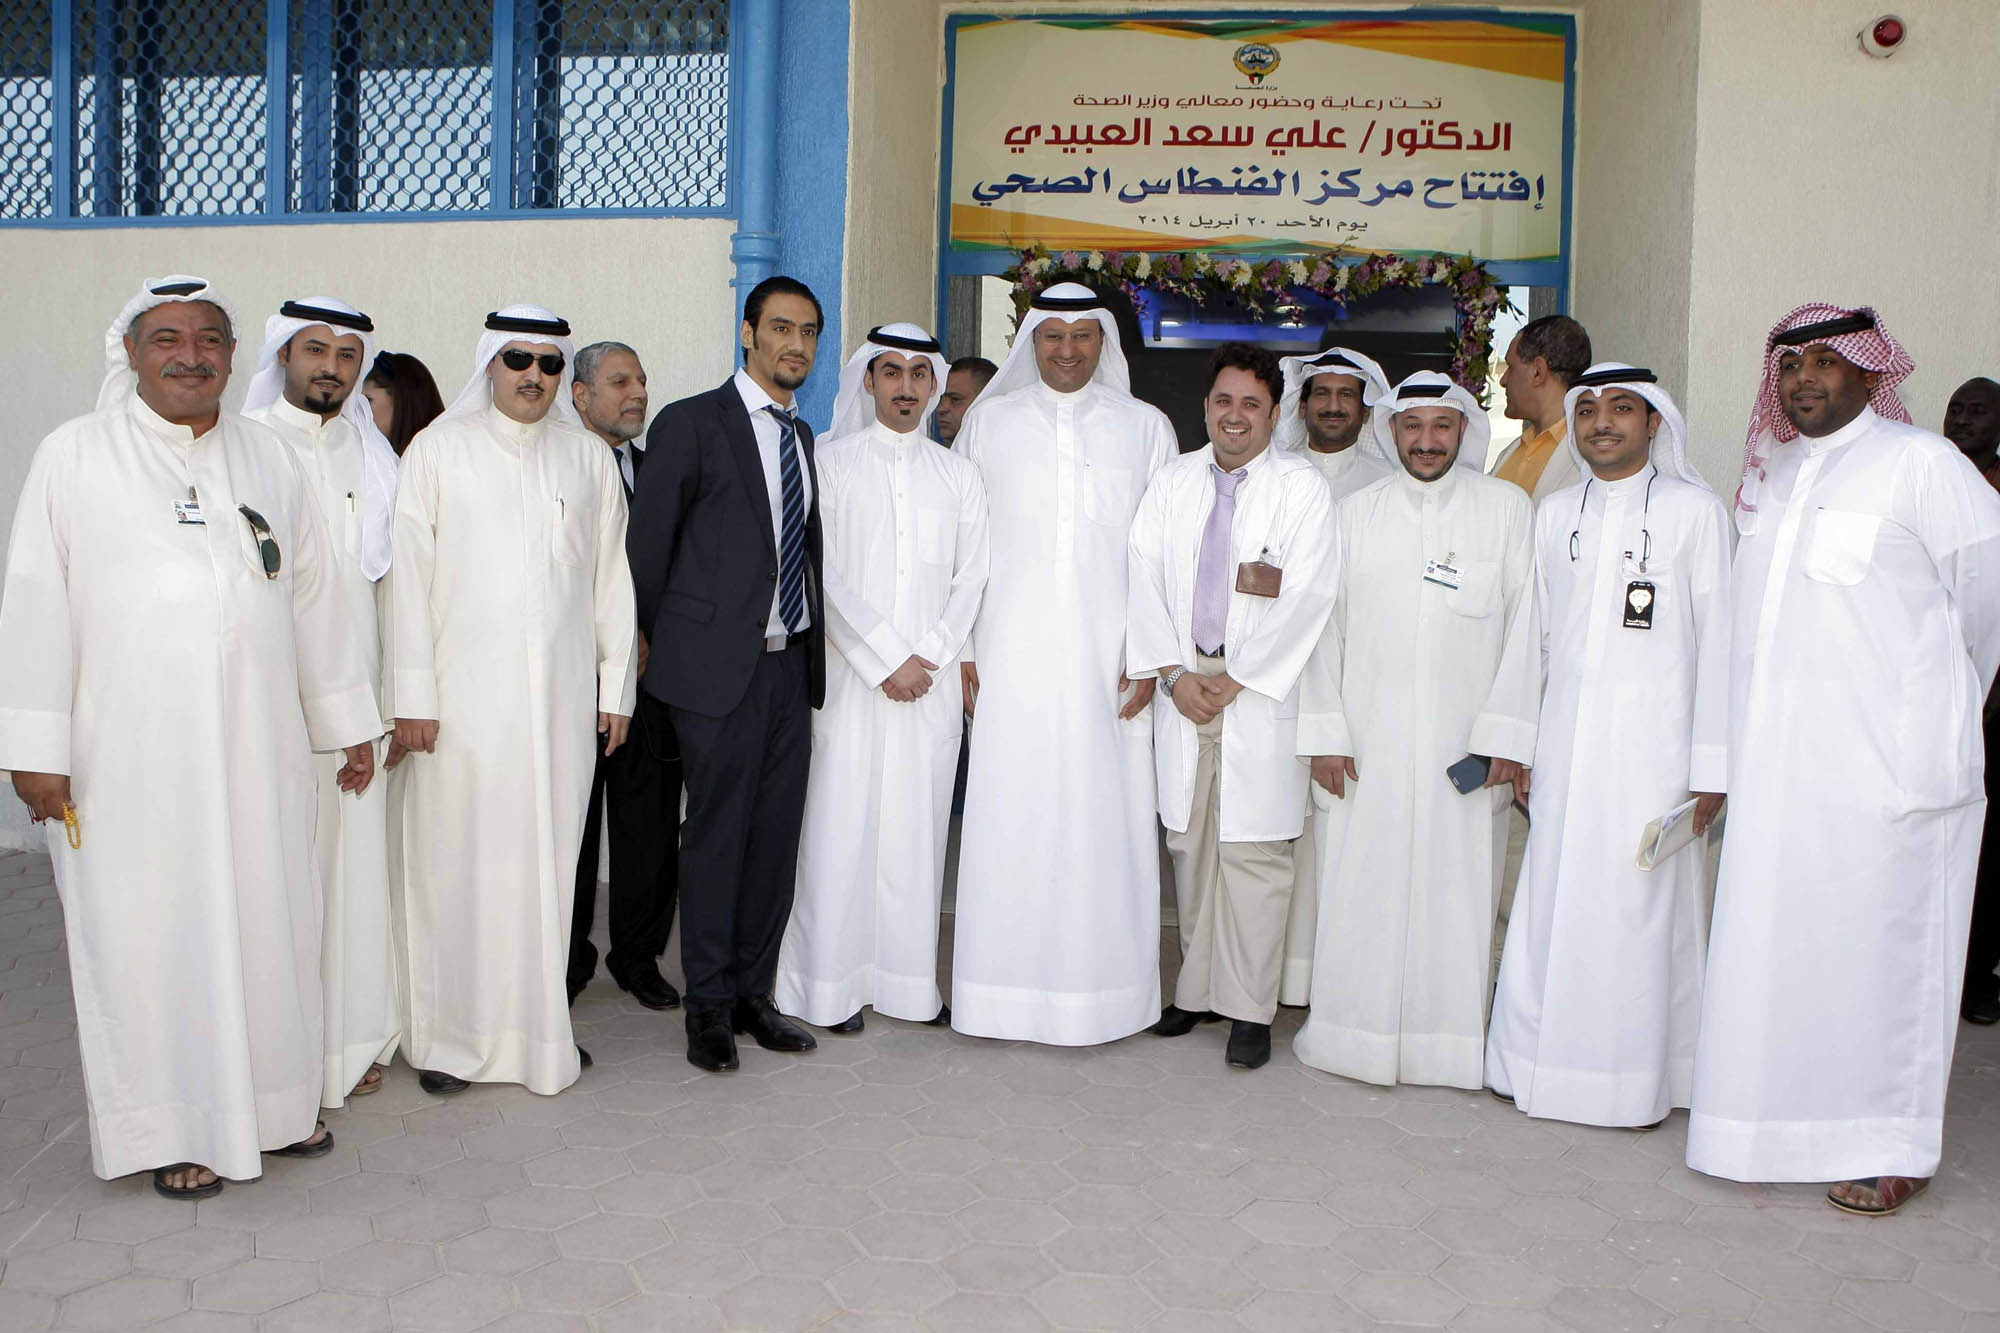 وزير الصحة الدكتور علي سعد العبيدي خلال افتتاحه مركز الفنطاس الصحي